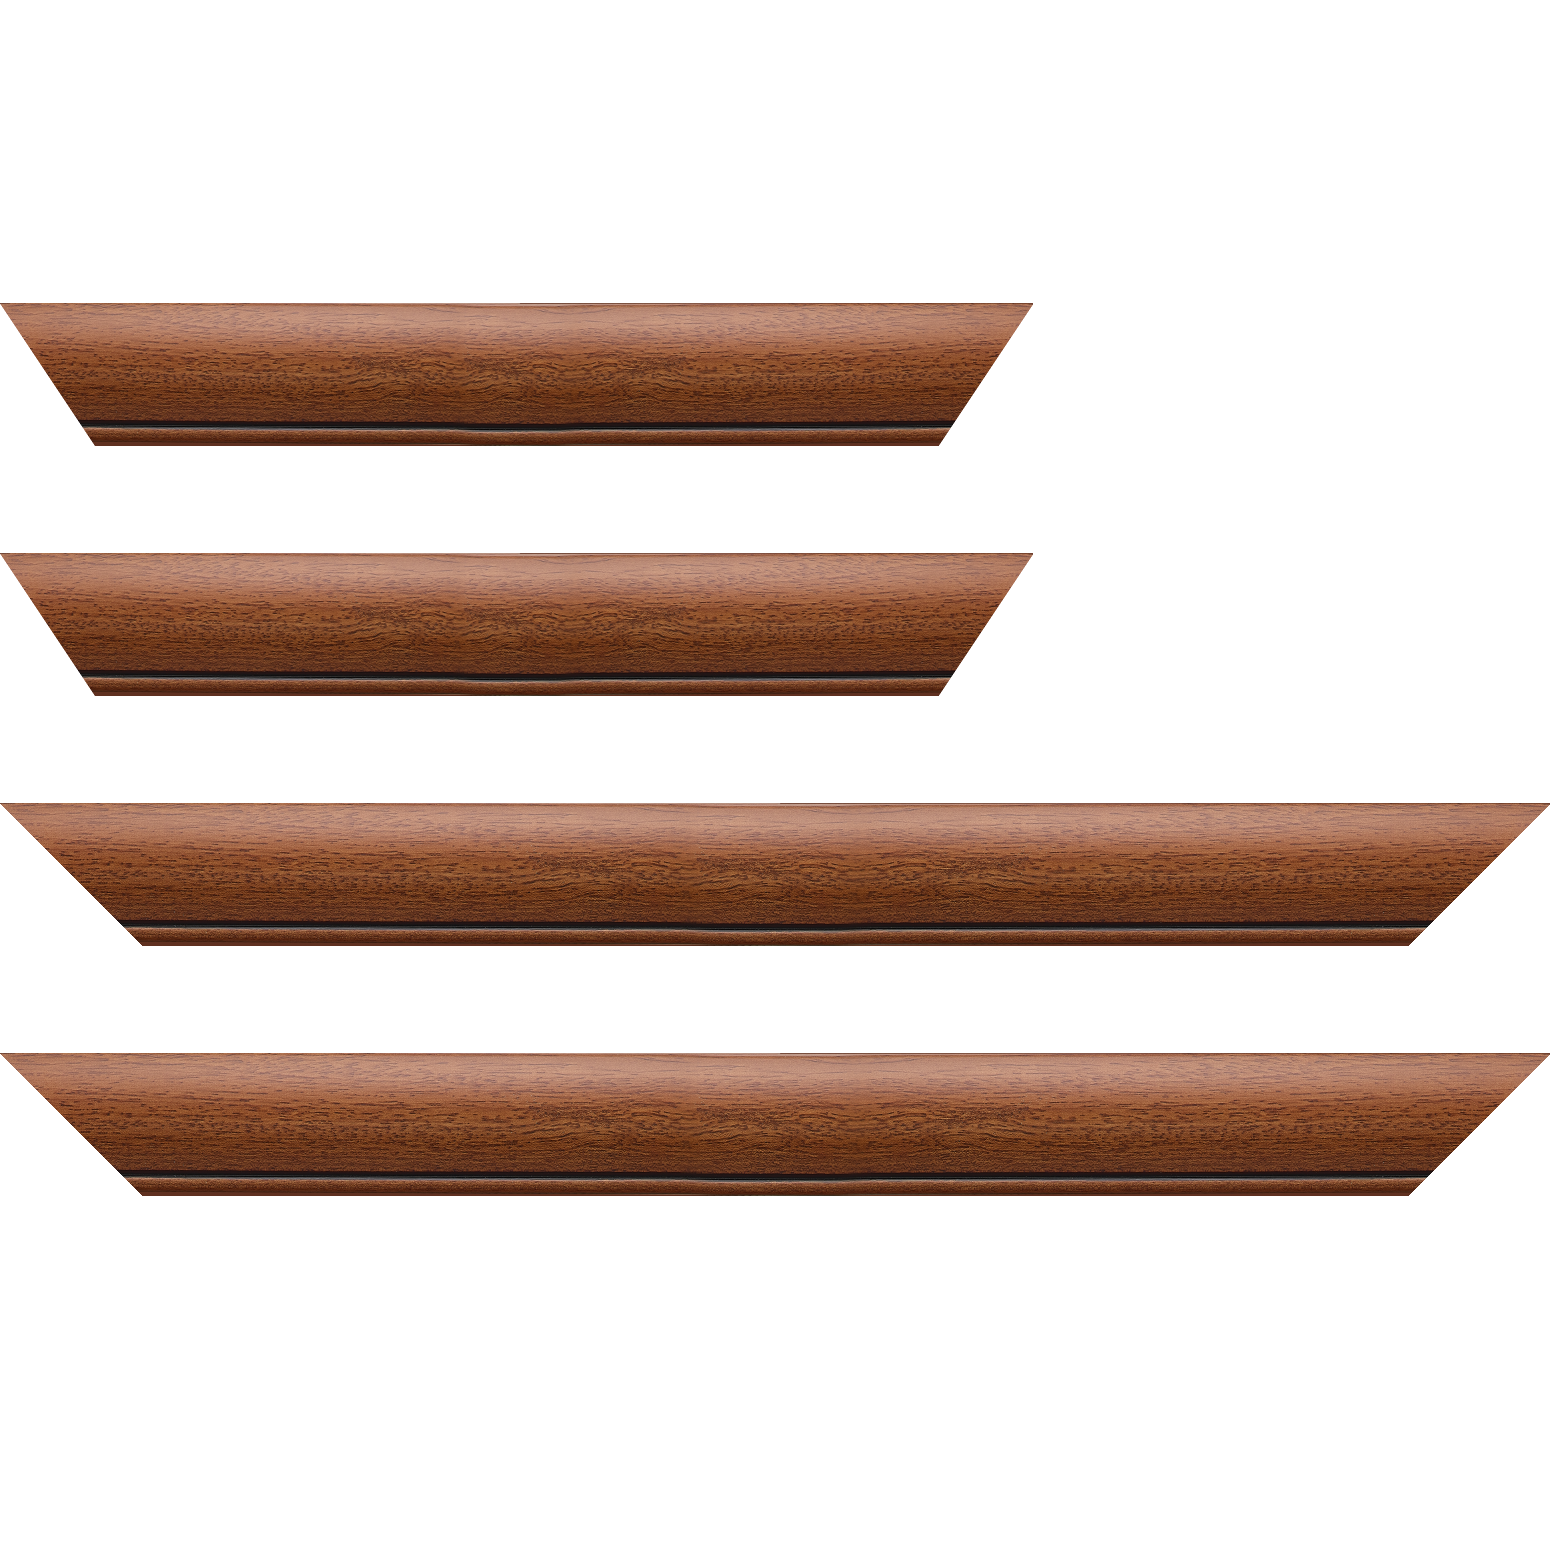 Baguette bois profil arrondi largeur 4.7cm couleur marron ton bois satiné rehaussé d'un filet noir - 18x24